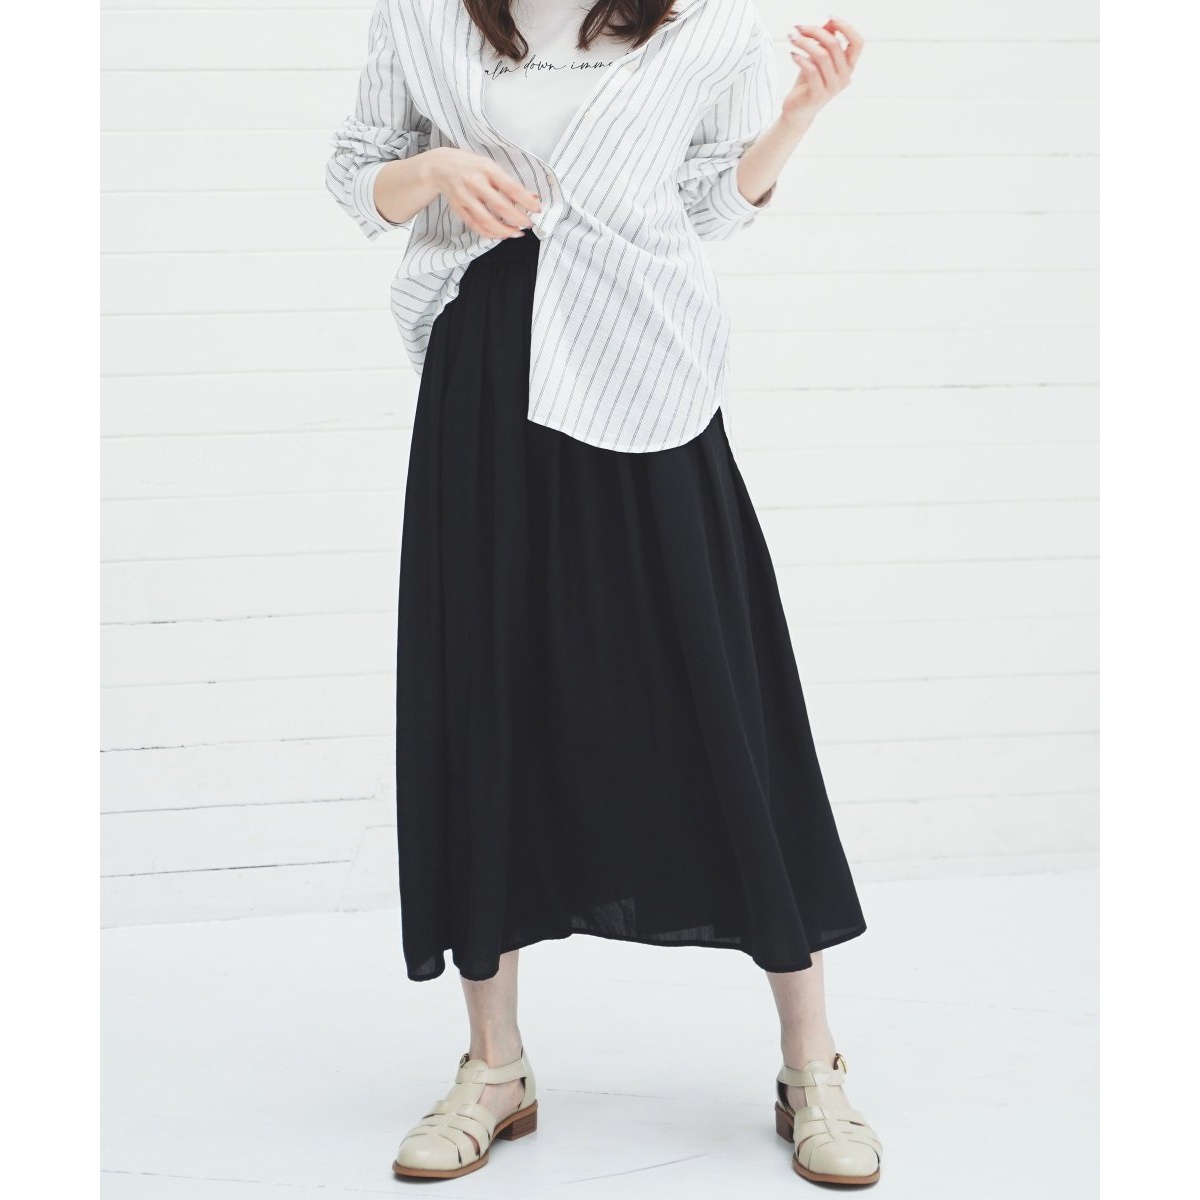 涼やかボリュームスカート | イッカ(ikka) | 12590250 | ファッション